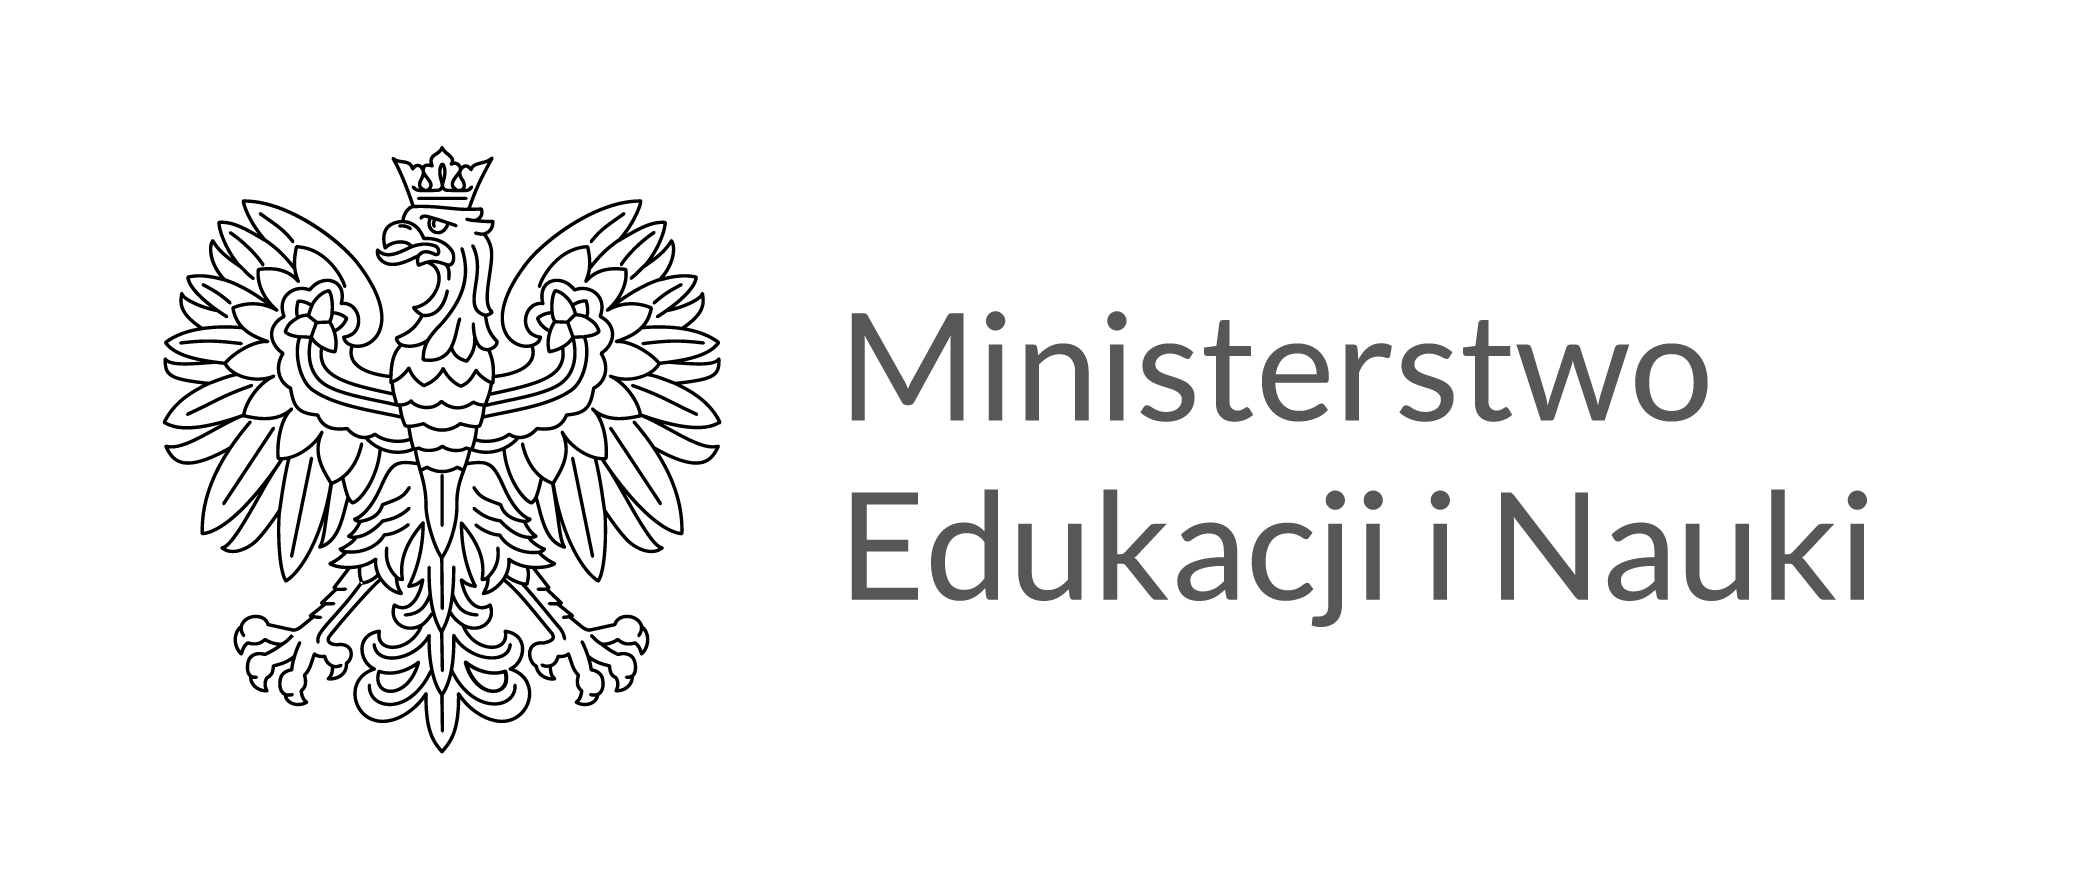 LOGO ministerstwo edukacji i nauki